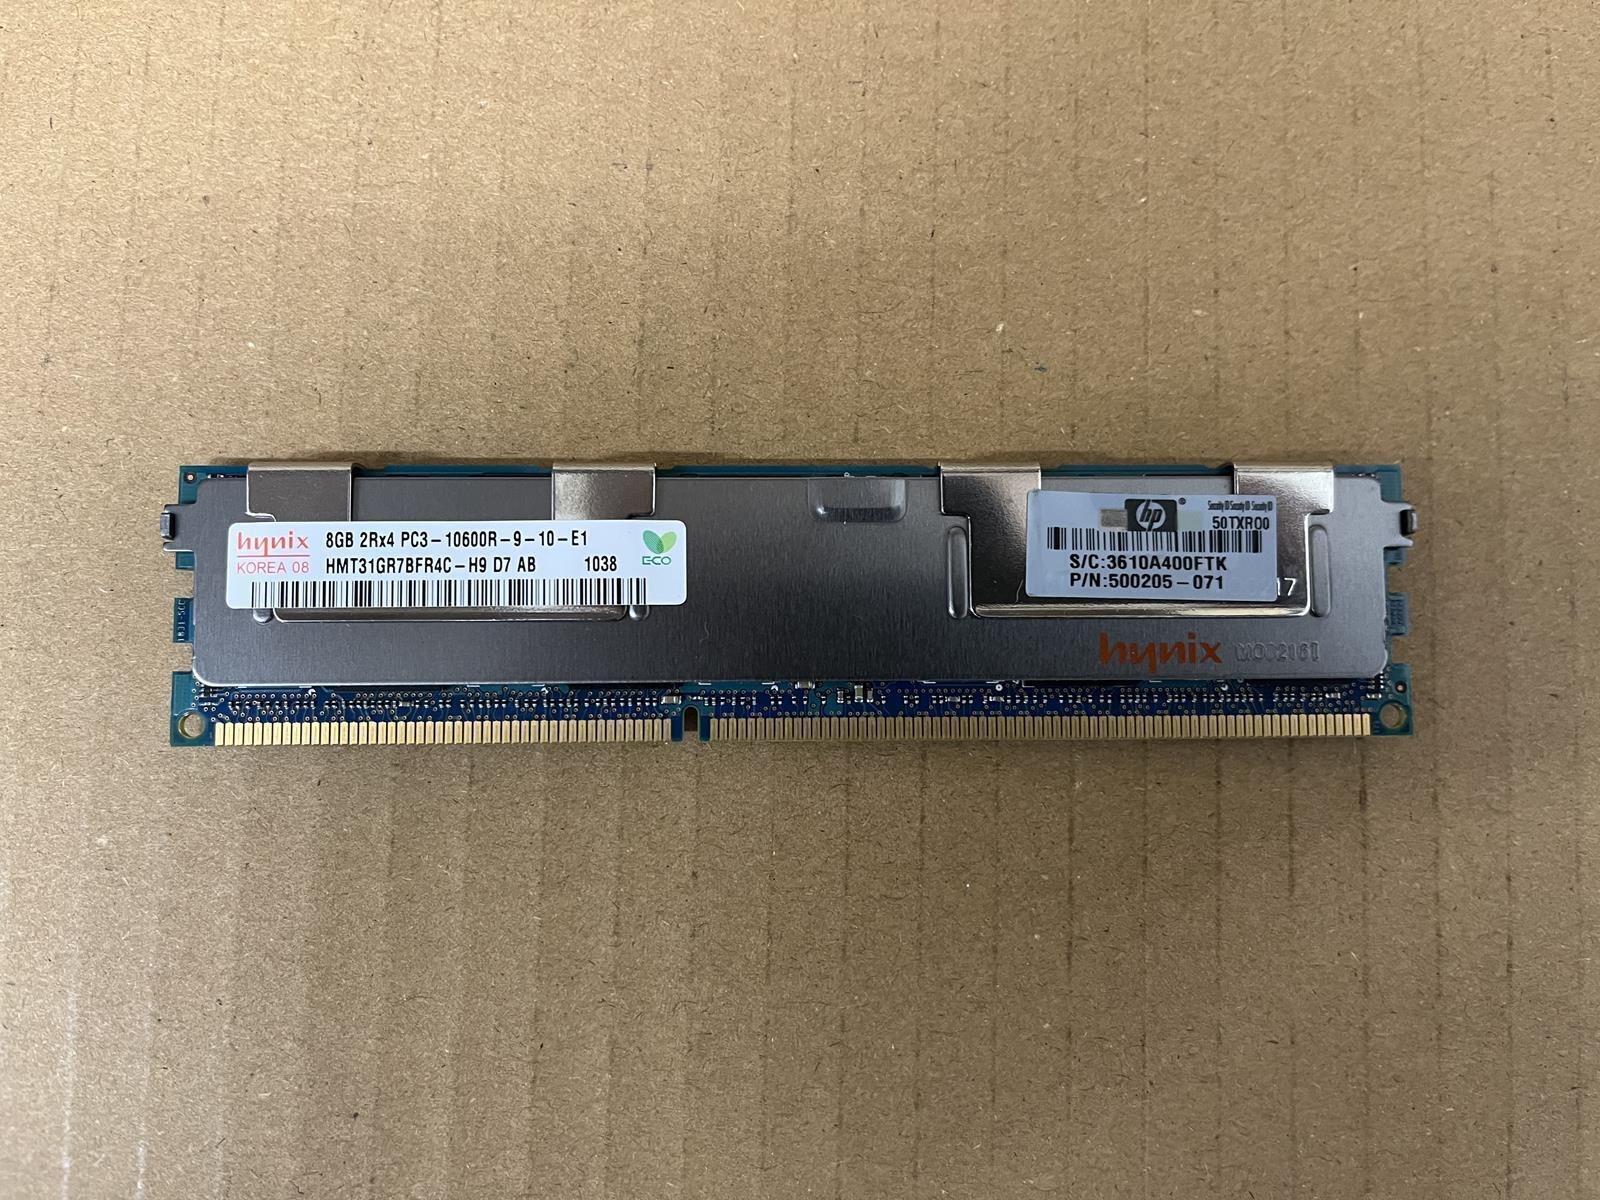 SK HYNIX 8 GB 2Rx4 PC3-10600R DIMM RAM HMT31GR7BFR4C-H9 D7 AB 038